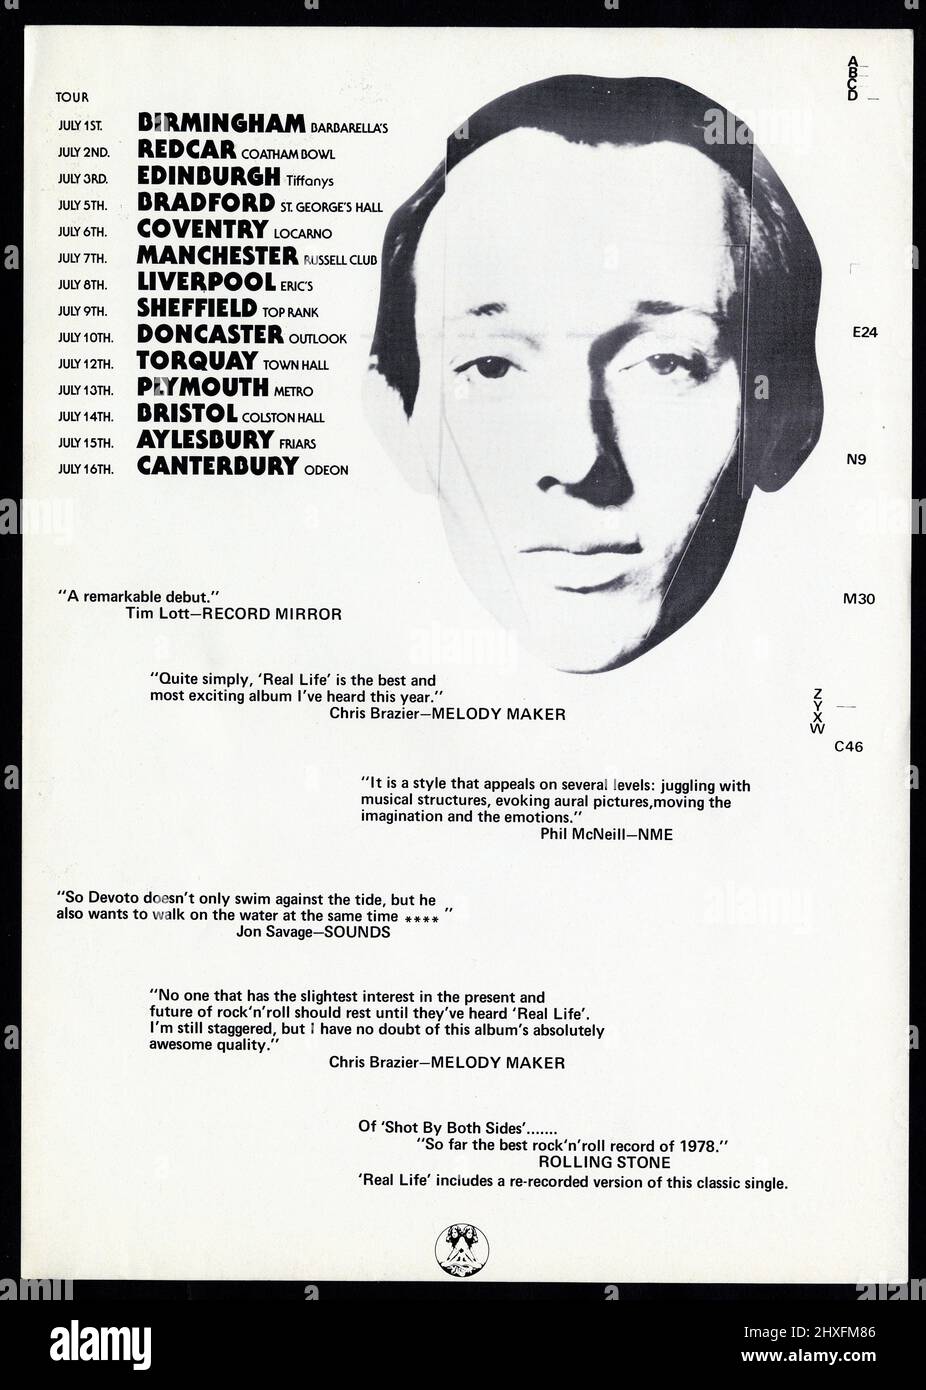 Das erste Album des Magazins Real Life auf Virgin Records enthielt eine Neuaufnahme ihrer klassischen Single Shot By Both Sides. Dieser Werbeflyer aus dem Jahr A4 hatte auf der einen Seite eine Anzeige für das Post-Punk-Album sowie Details ihrer großen UK-Tour vom 1978. Juli auf der anderen Seite und Zitate über das Album. Howard Devoto. Stockfoto